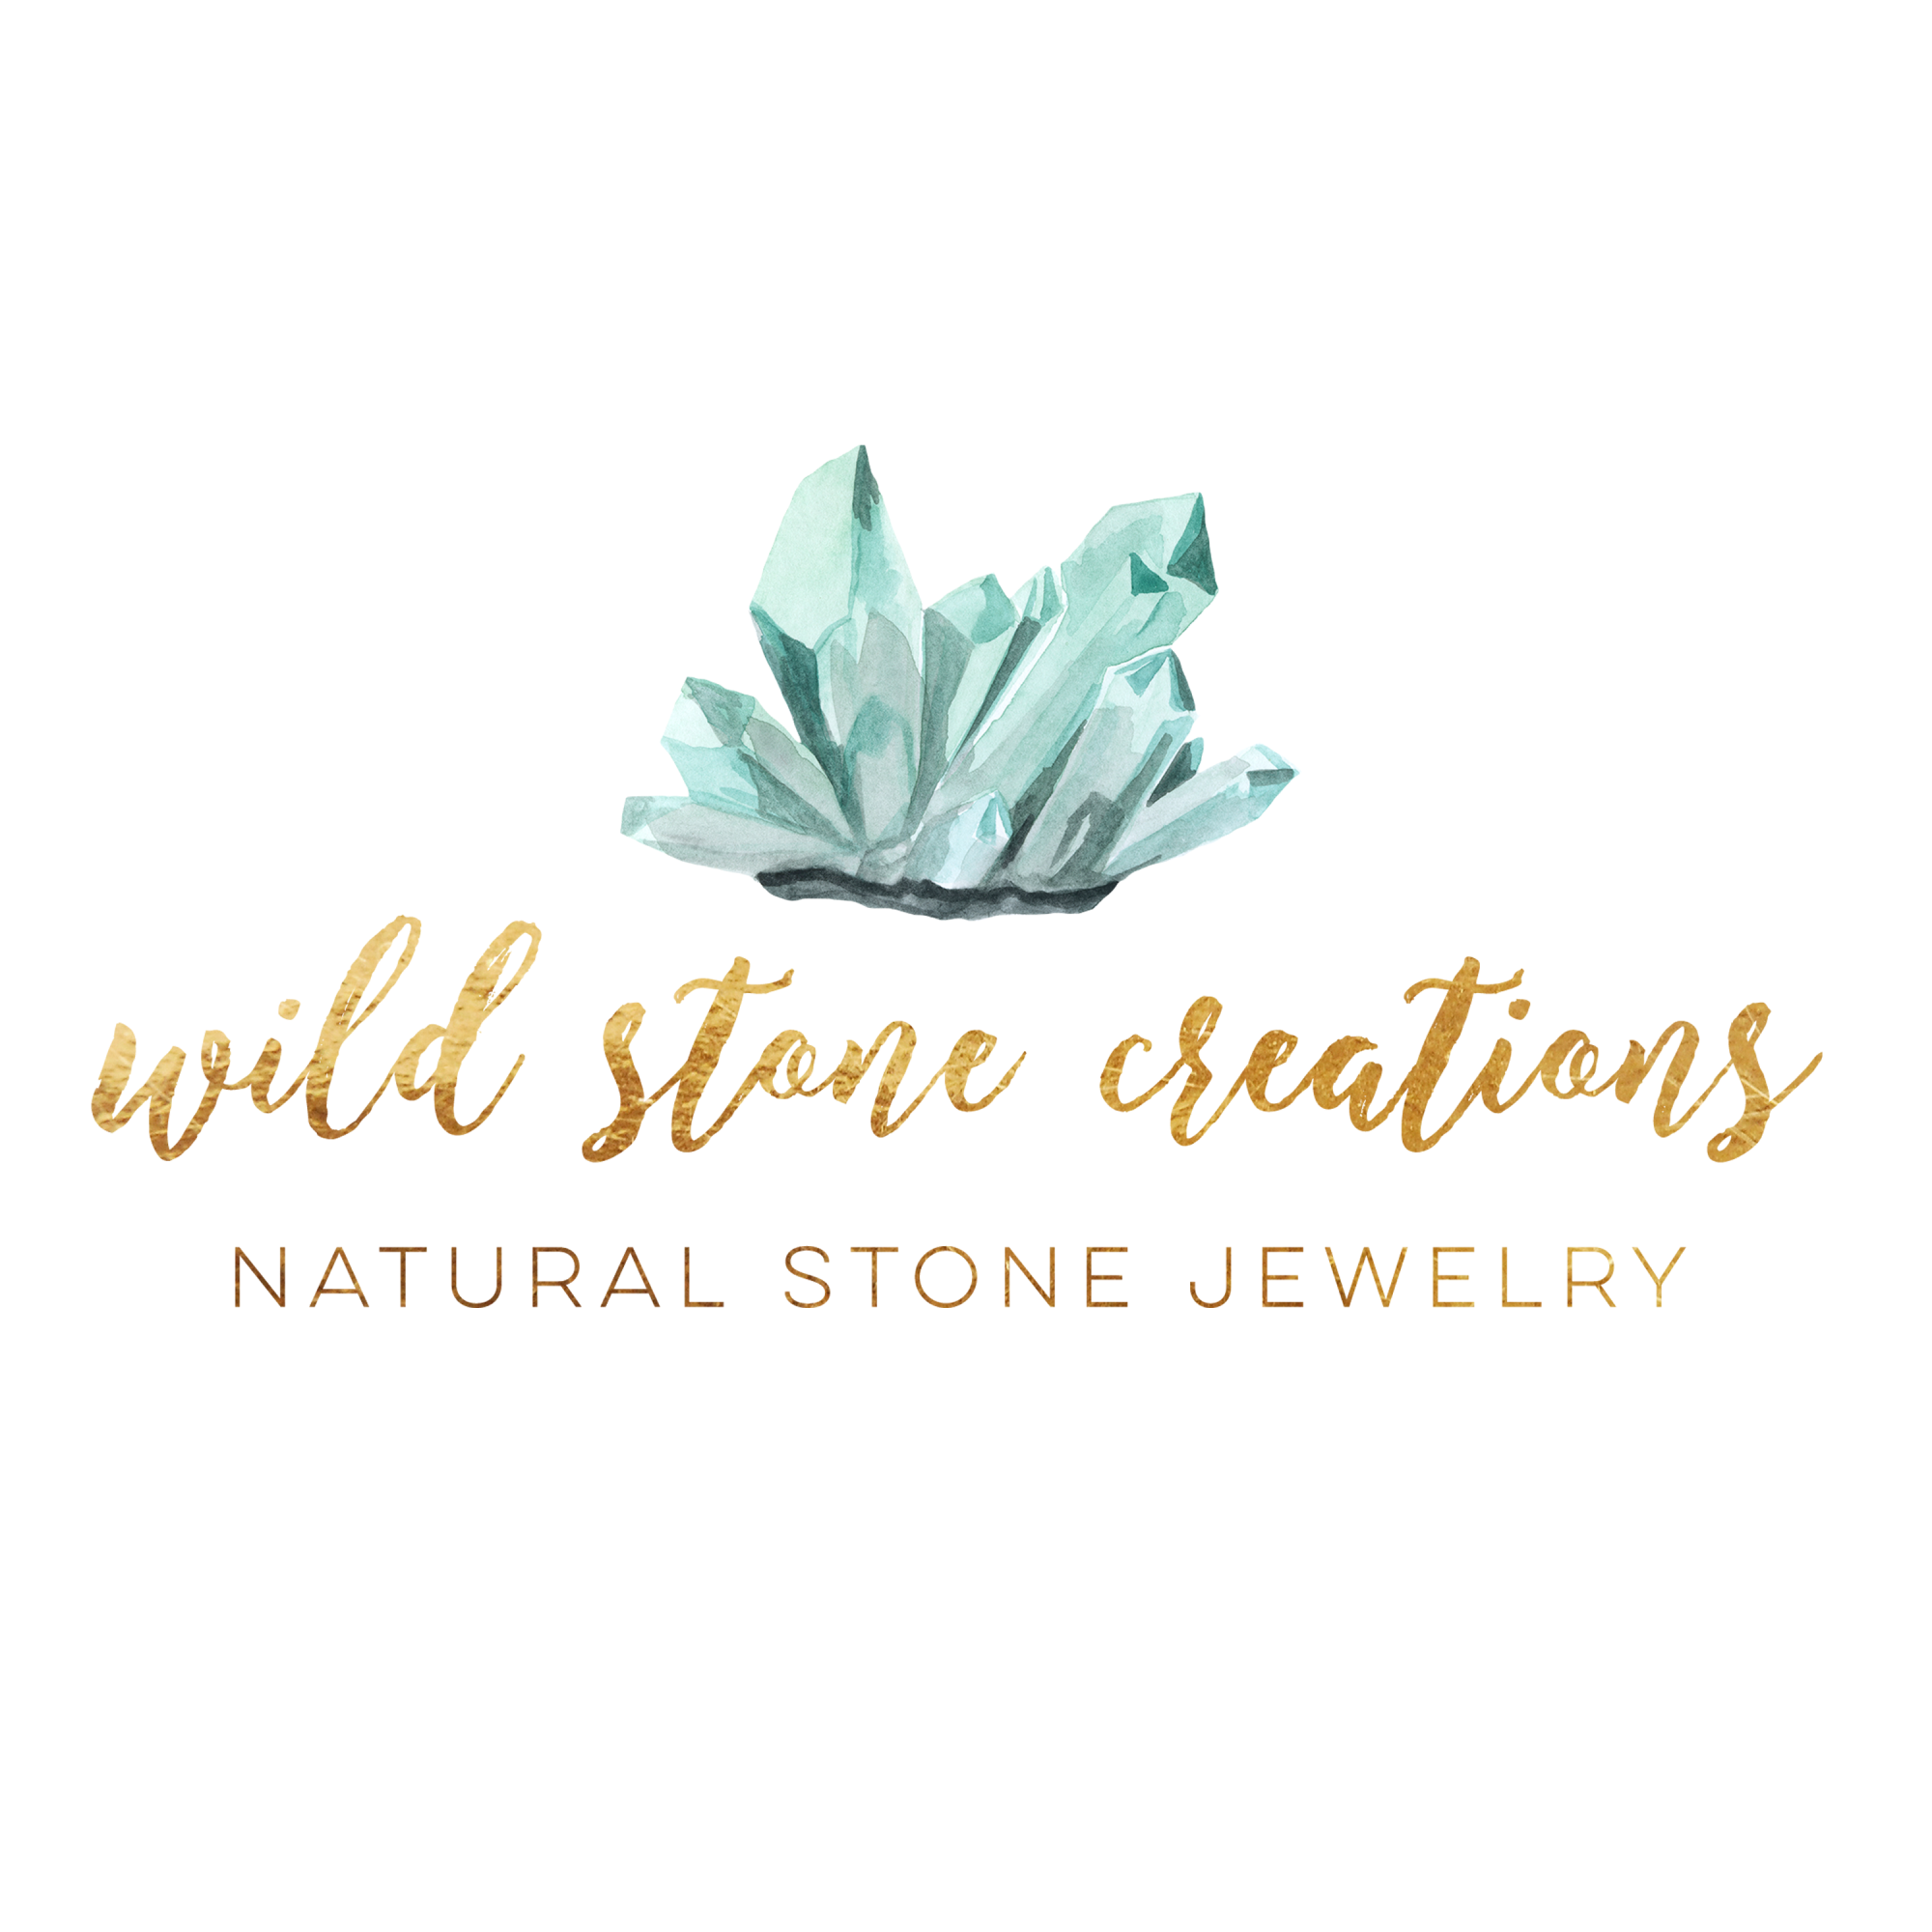 Wildstonecreations logo